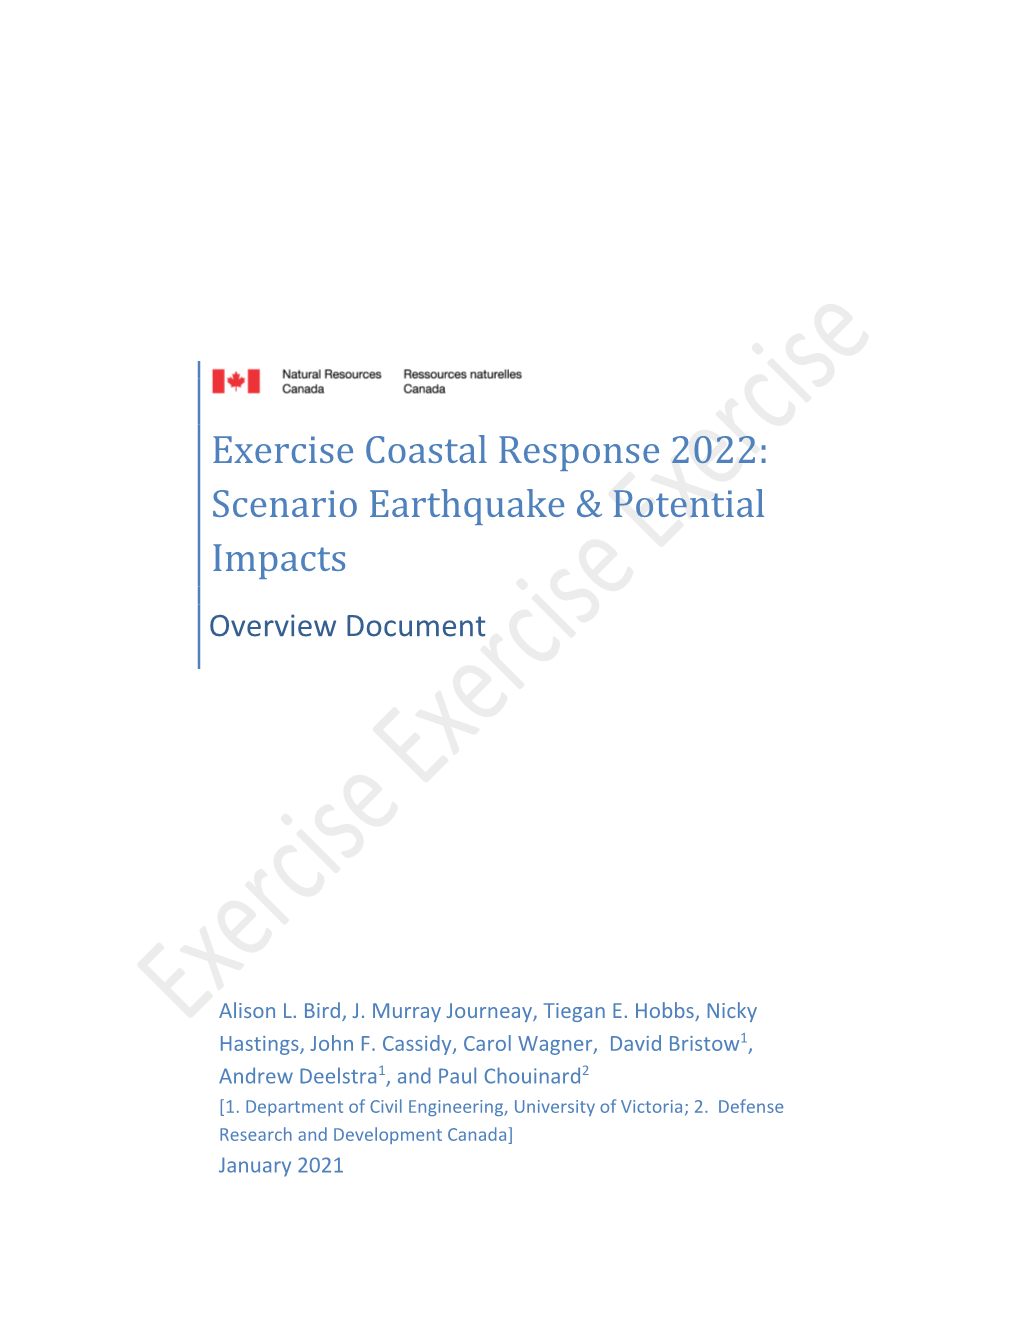 Exercise Coastal Response 2022: Scenario Earthquake & Potential